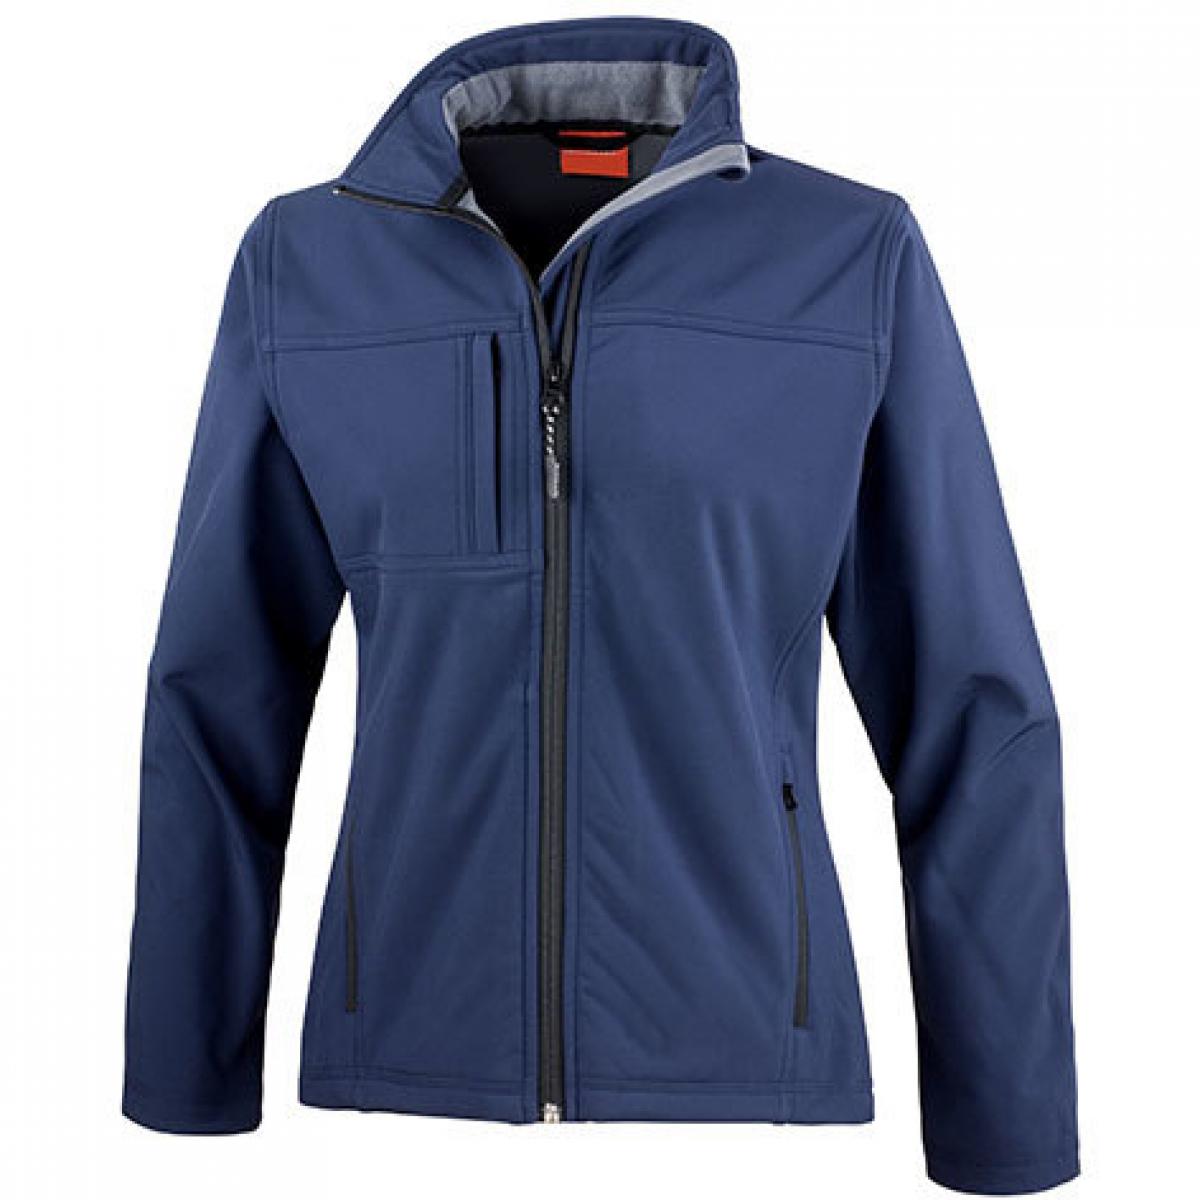 Hersteller: Result Herstellernummer: R121F Artikelbezeichnung: Ladies Classic Soft Shell Jacket Farbe: Navy